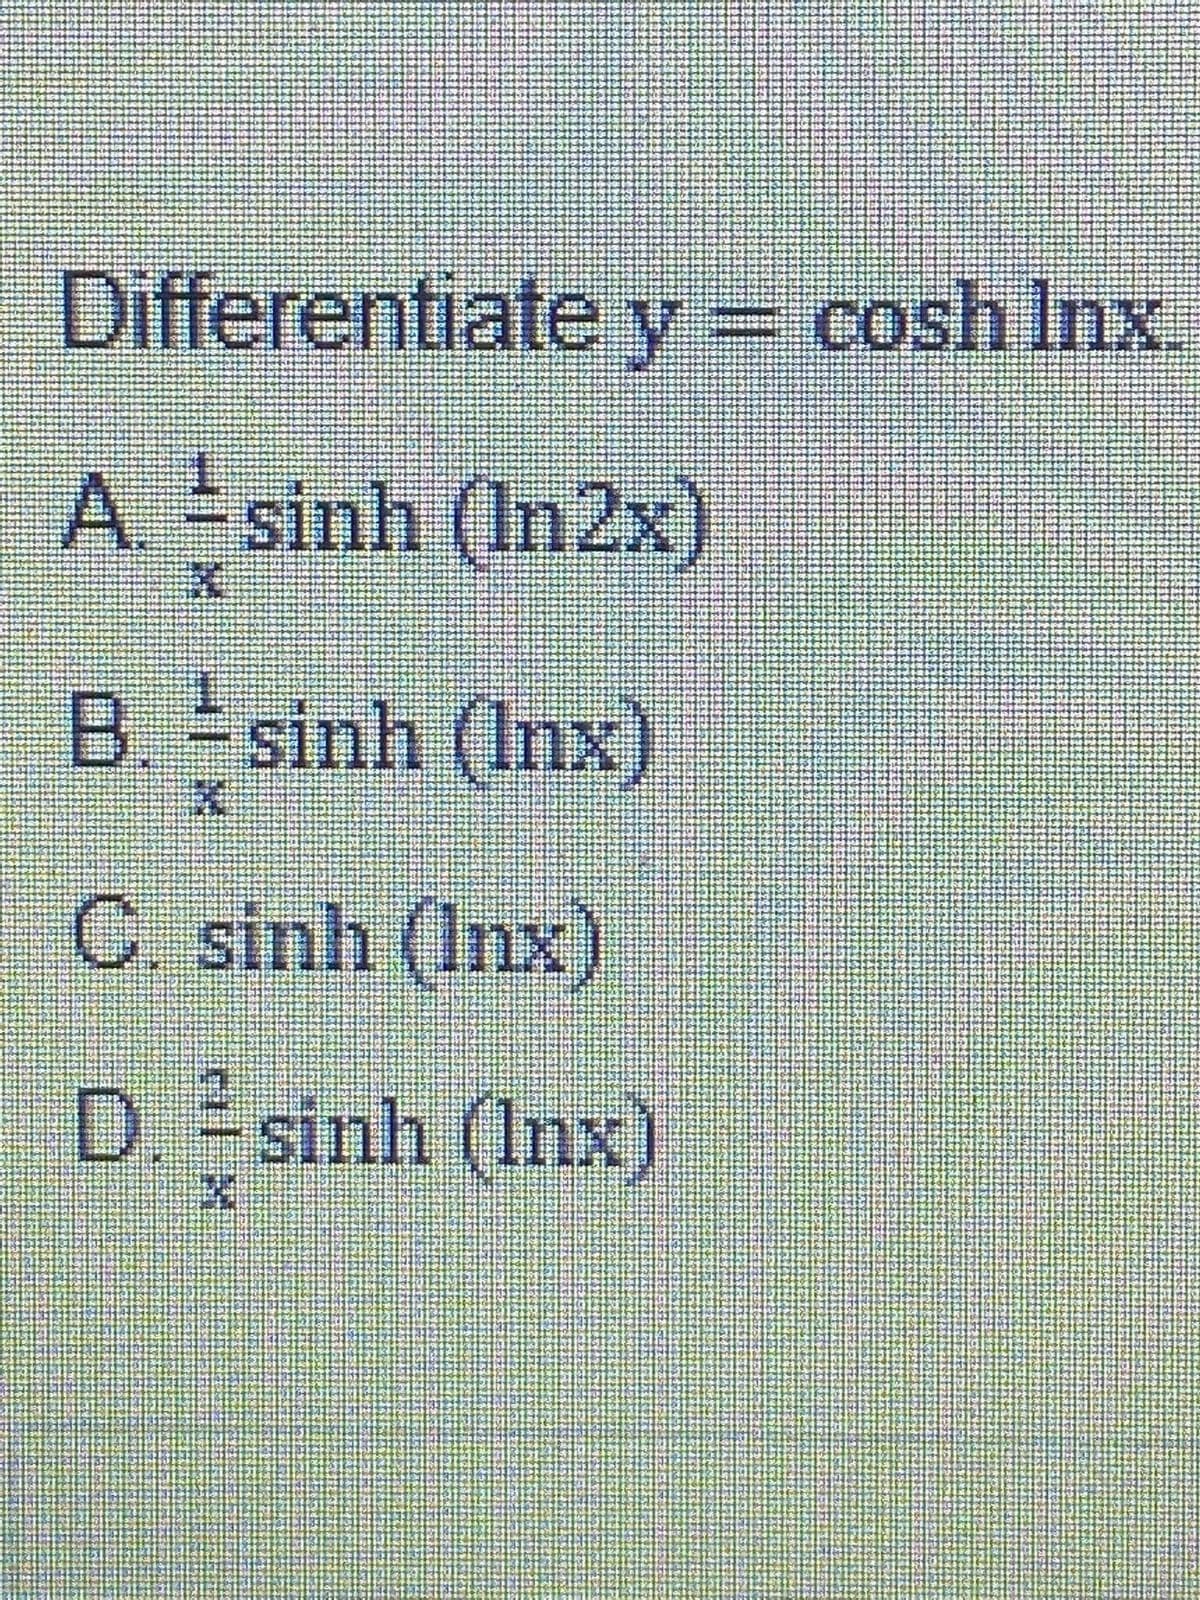 Differentiate y= cosh Inx.
A sinh (In2x)
B. sinh (Inx)
C. sinh (Inx)
D. sinh (Inx)
